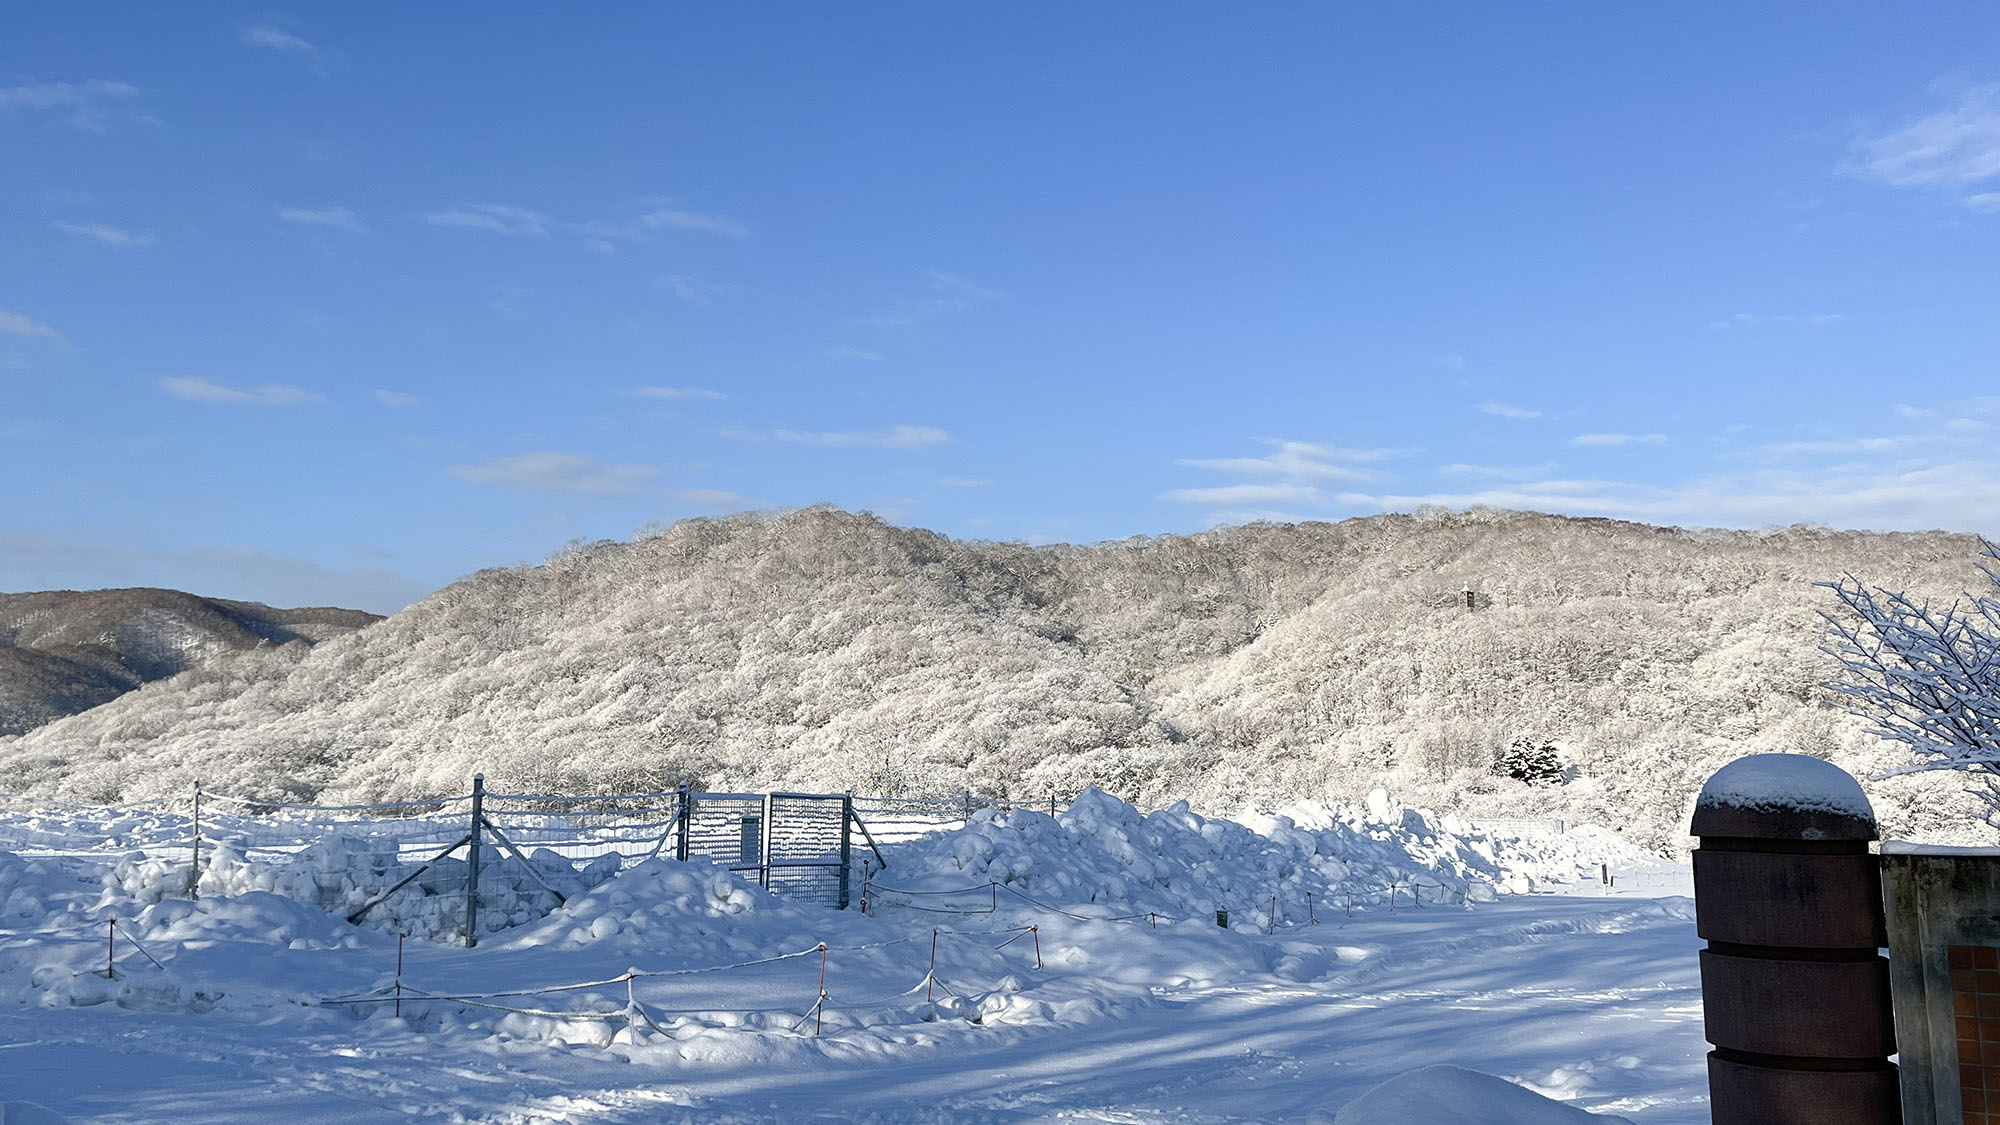 ・【冬の風景】雪に覆われた白い山と青空のコントラストが目をひきます